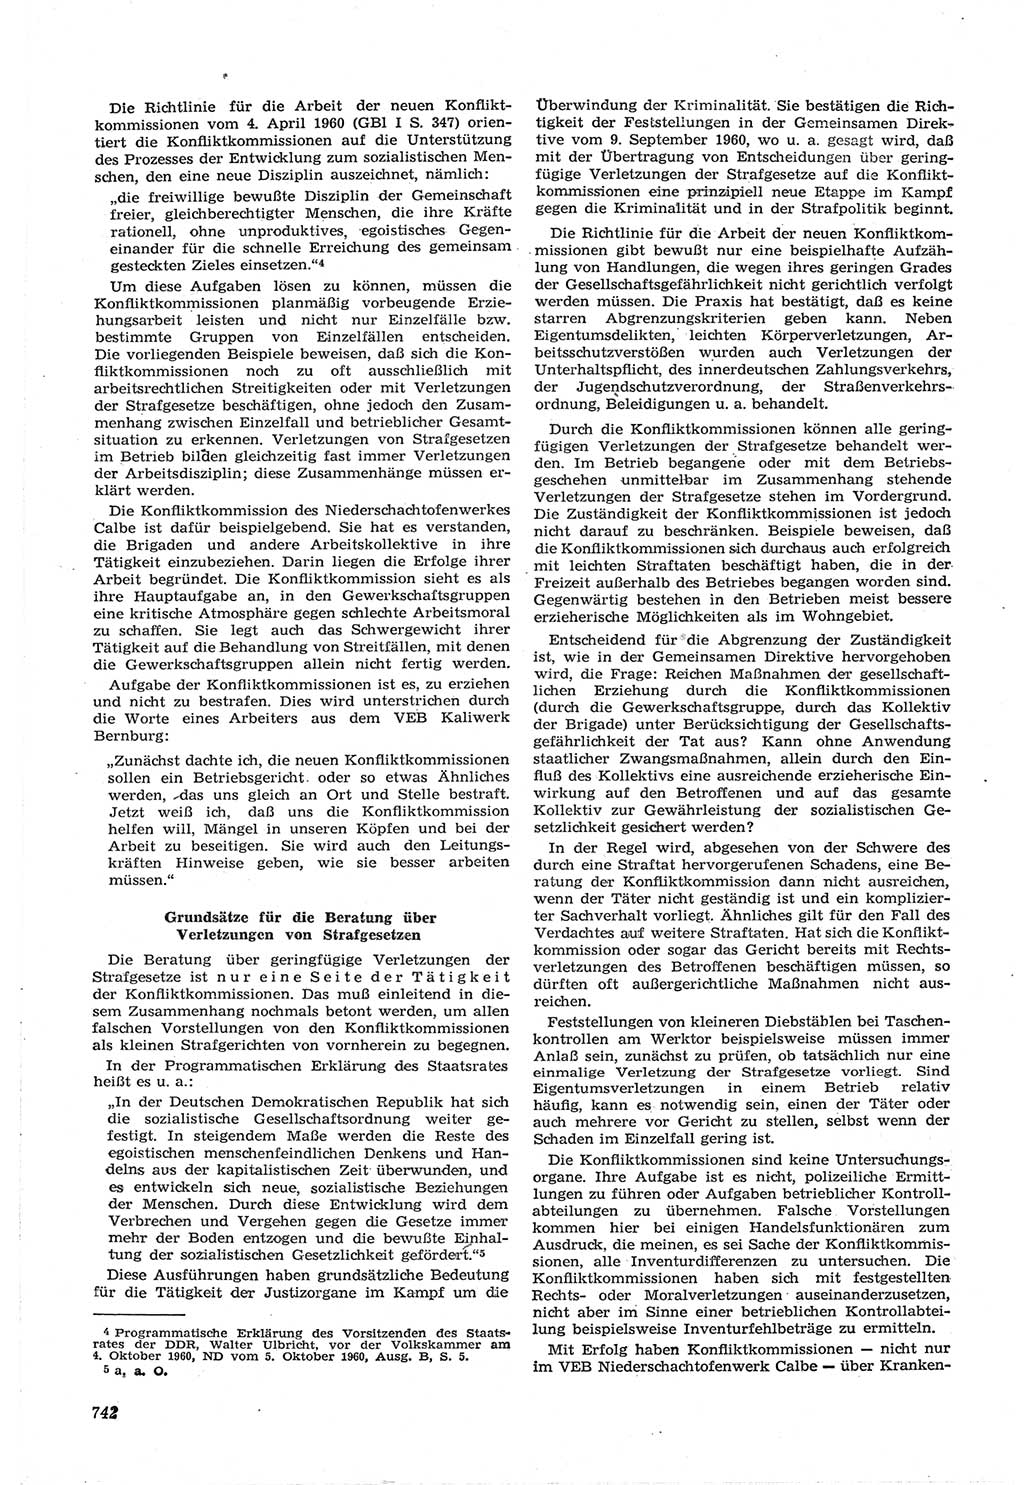 Neue Justiz (NJ), Zeitschrift für Recht und Rechtswissenschaft [Deutsche Demokratische Republik (DDR)], 14. Jahrgang 1960, Seite 742 (NJ DDR 1960, S. 742)